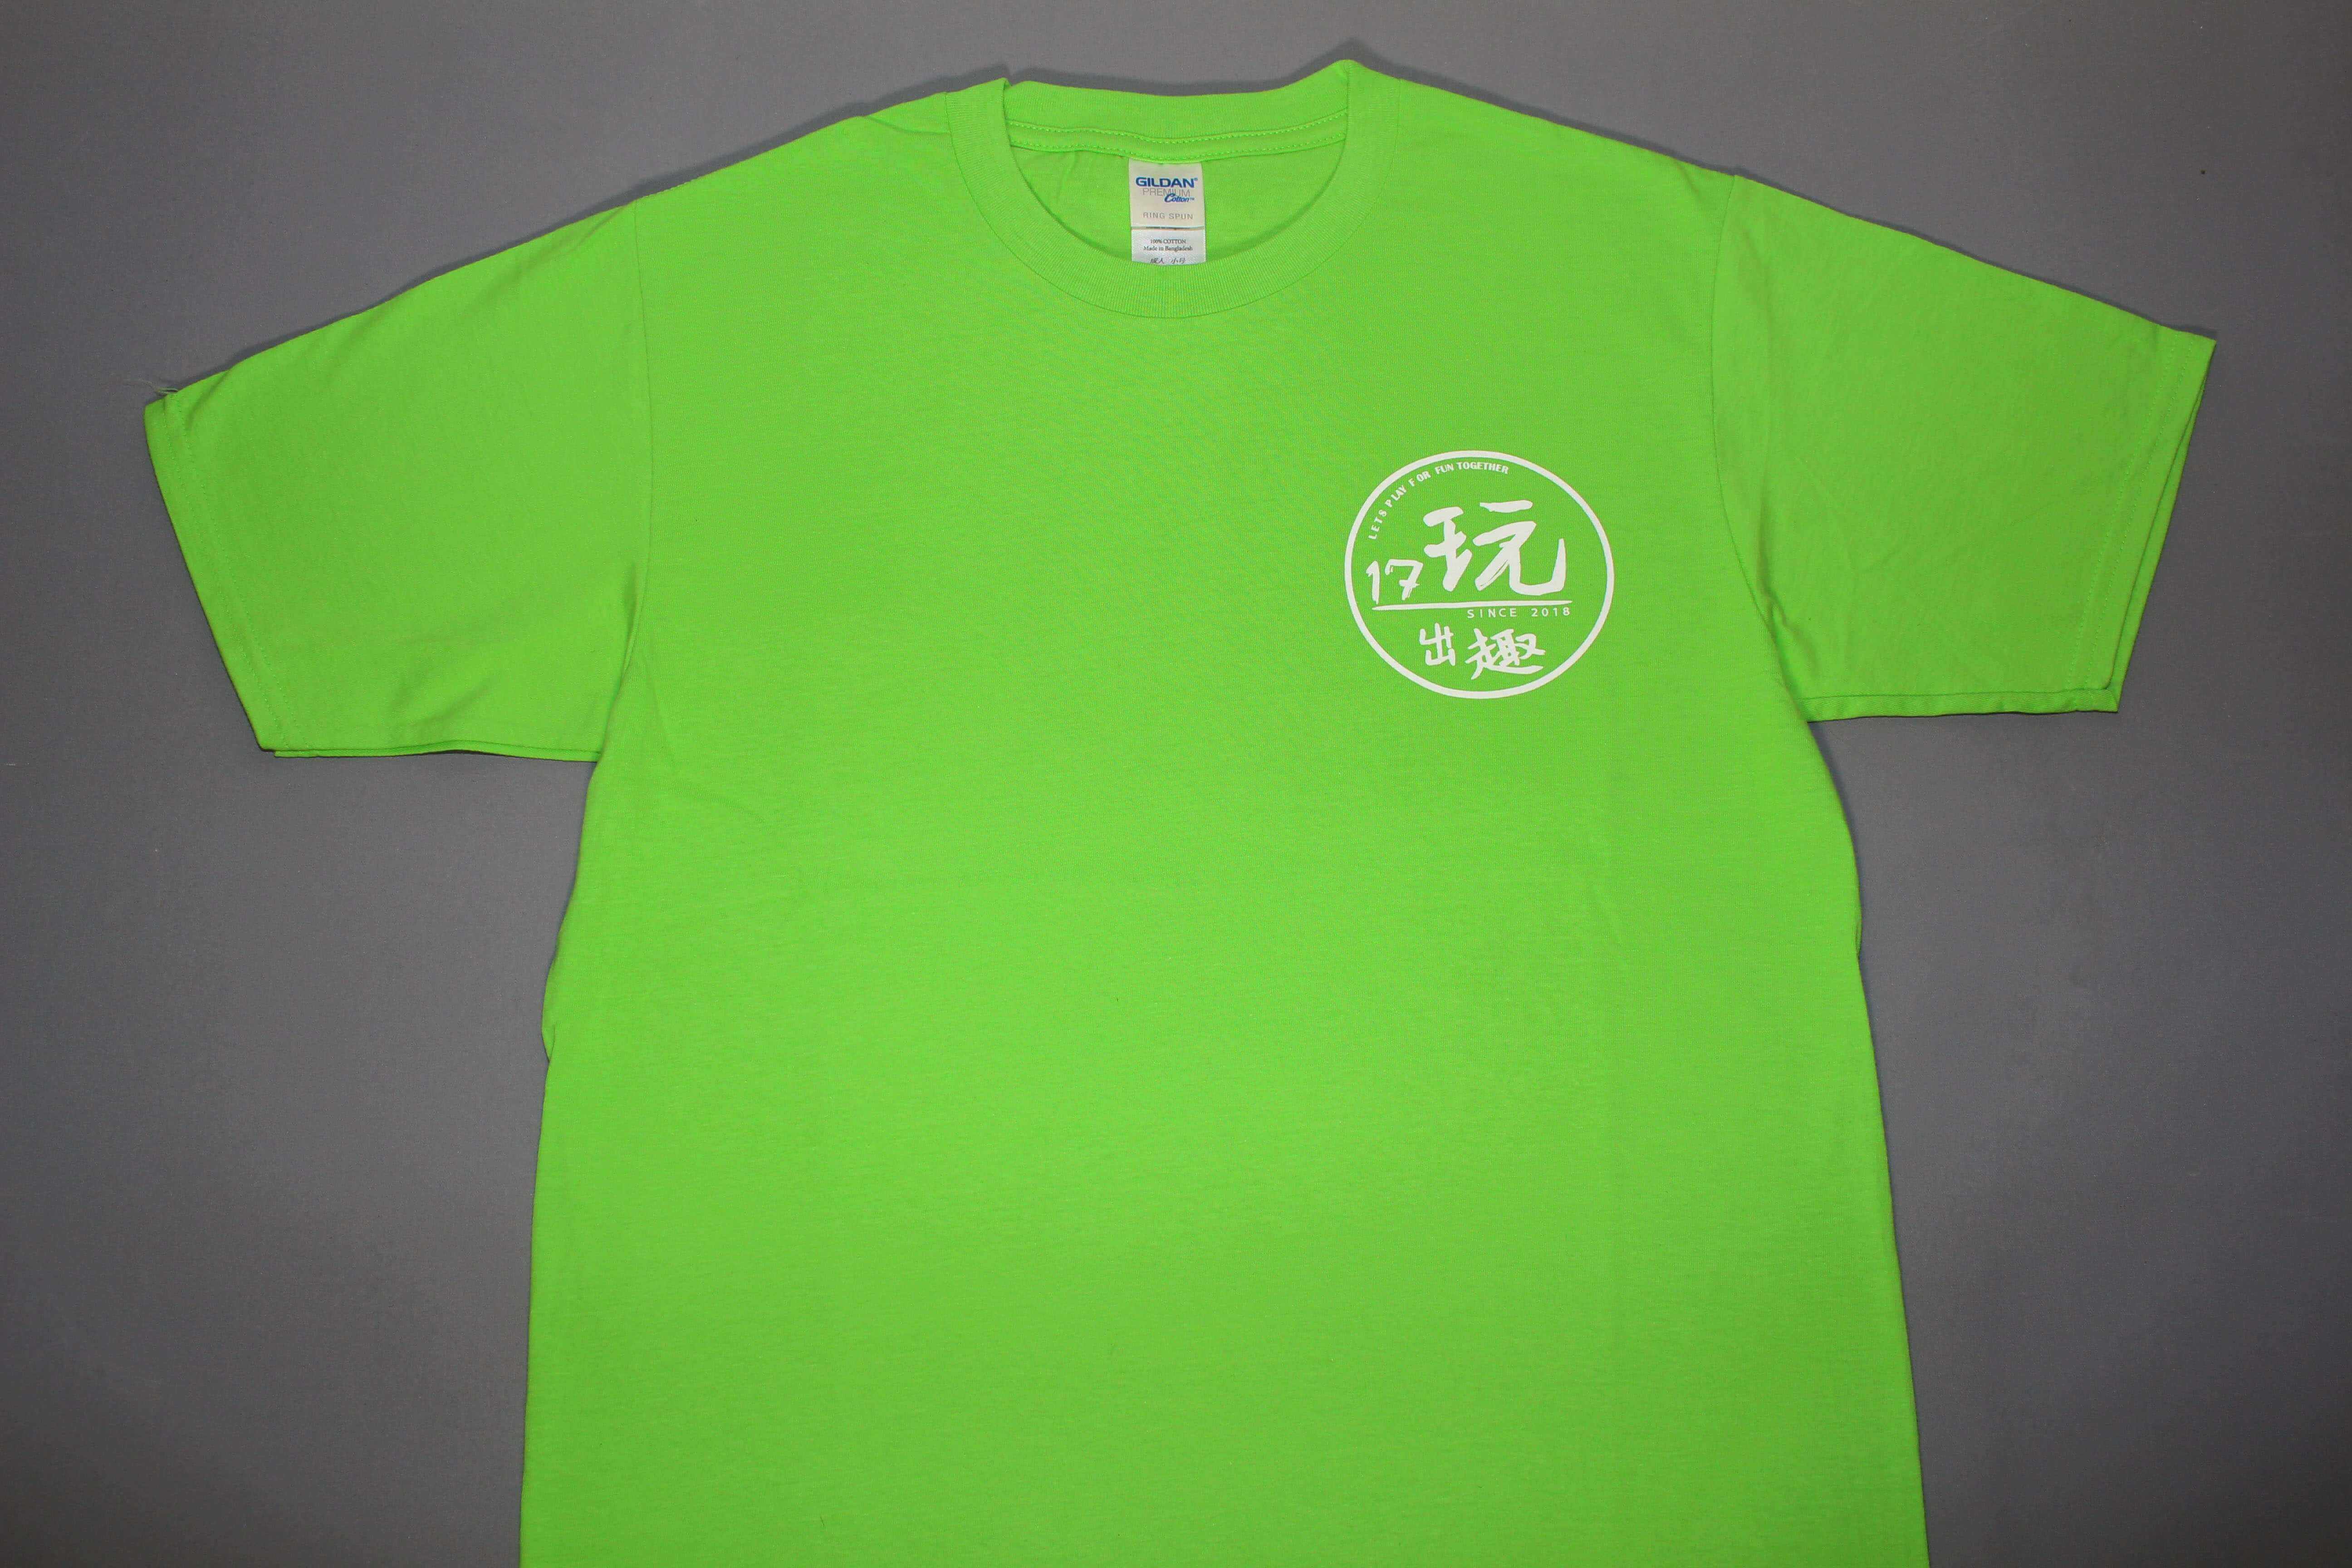 客製化T恤- 17玩出趣客製化團服的第1張圖(客製化公司制服、班服製作、團體服製作等示意或作品圖)